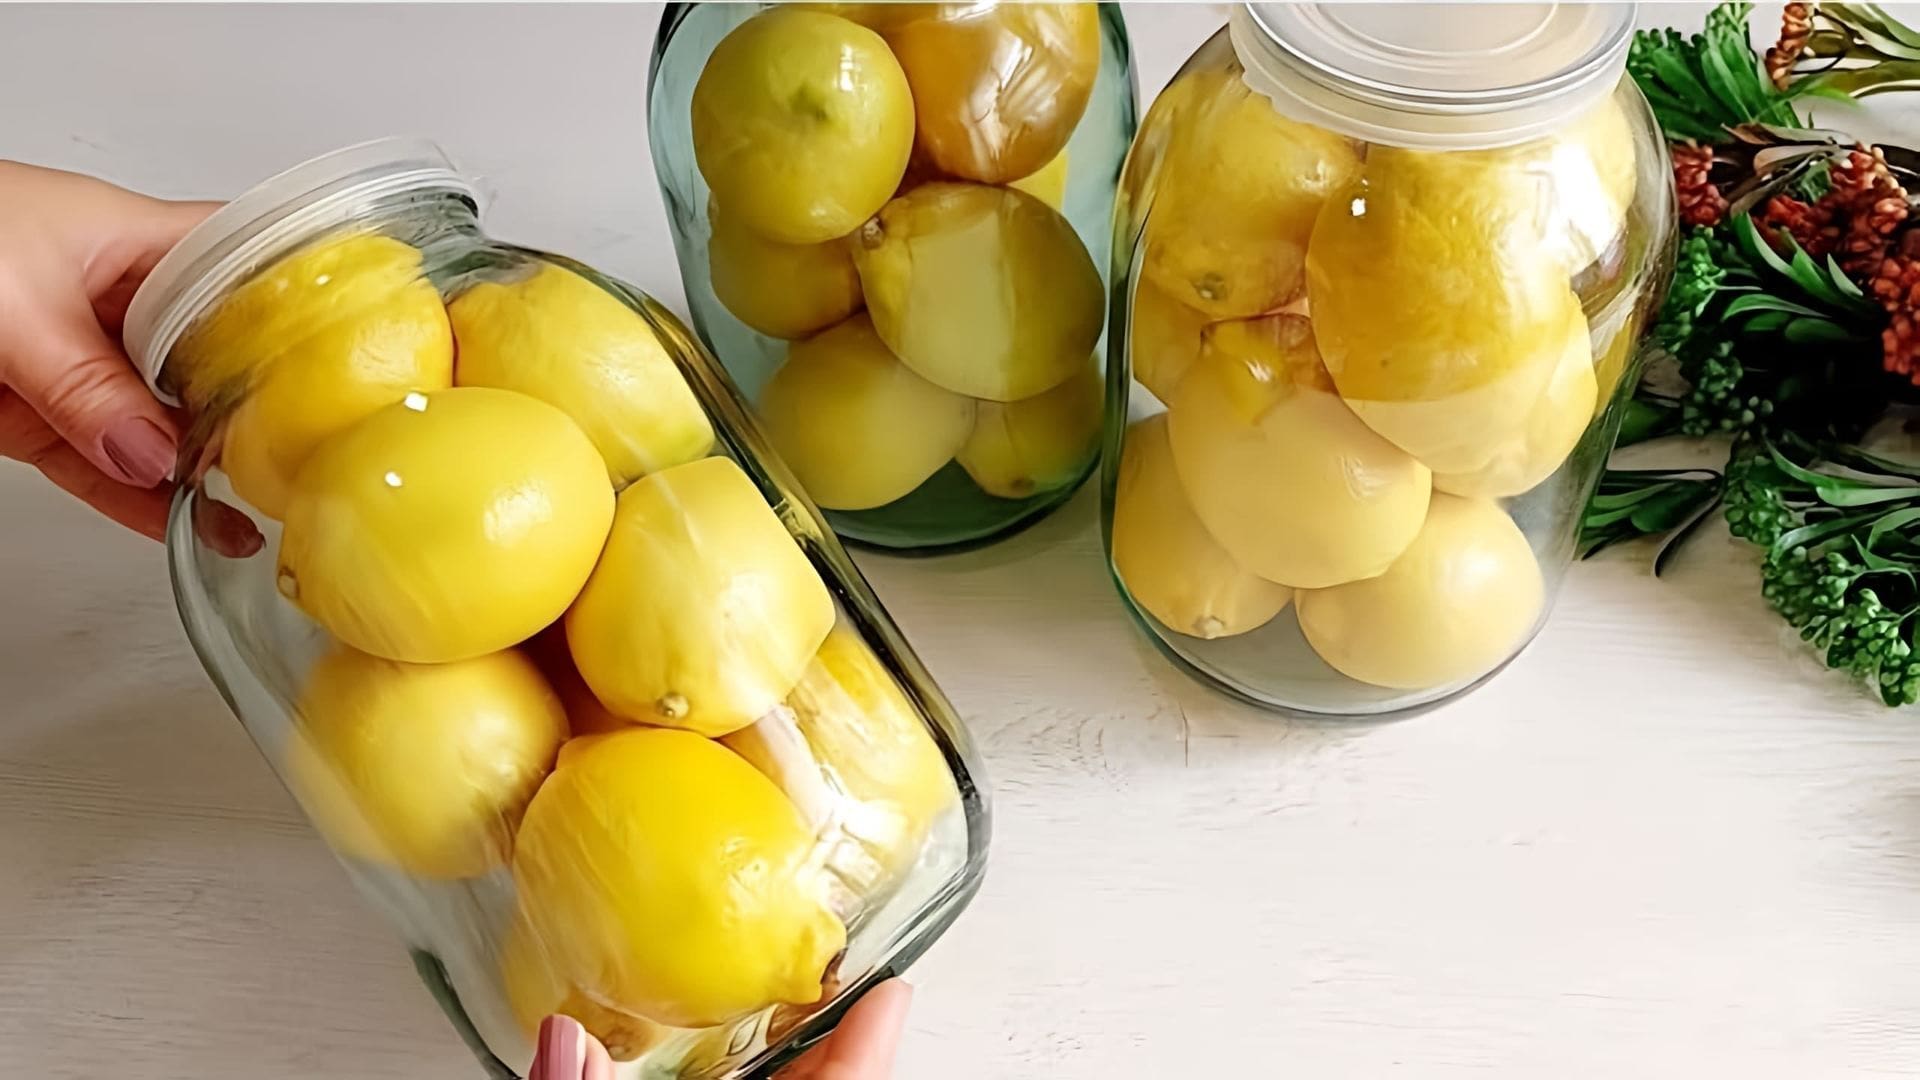 В этом видео демонстрируется процесс приготовления лимонного варенья без заморозки и варки